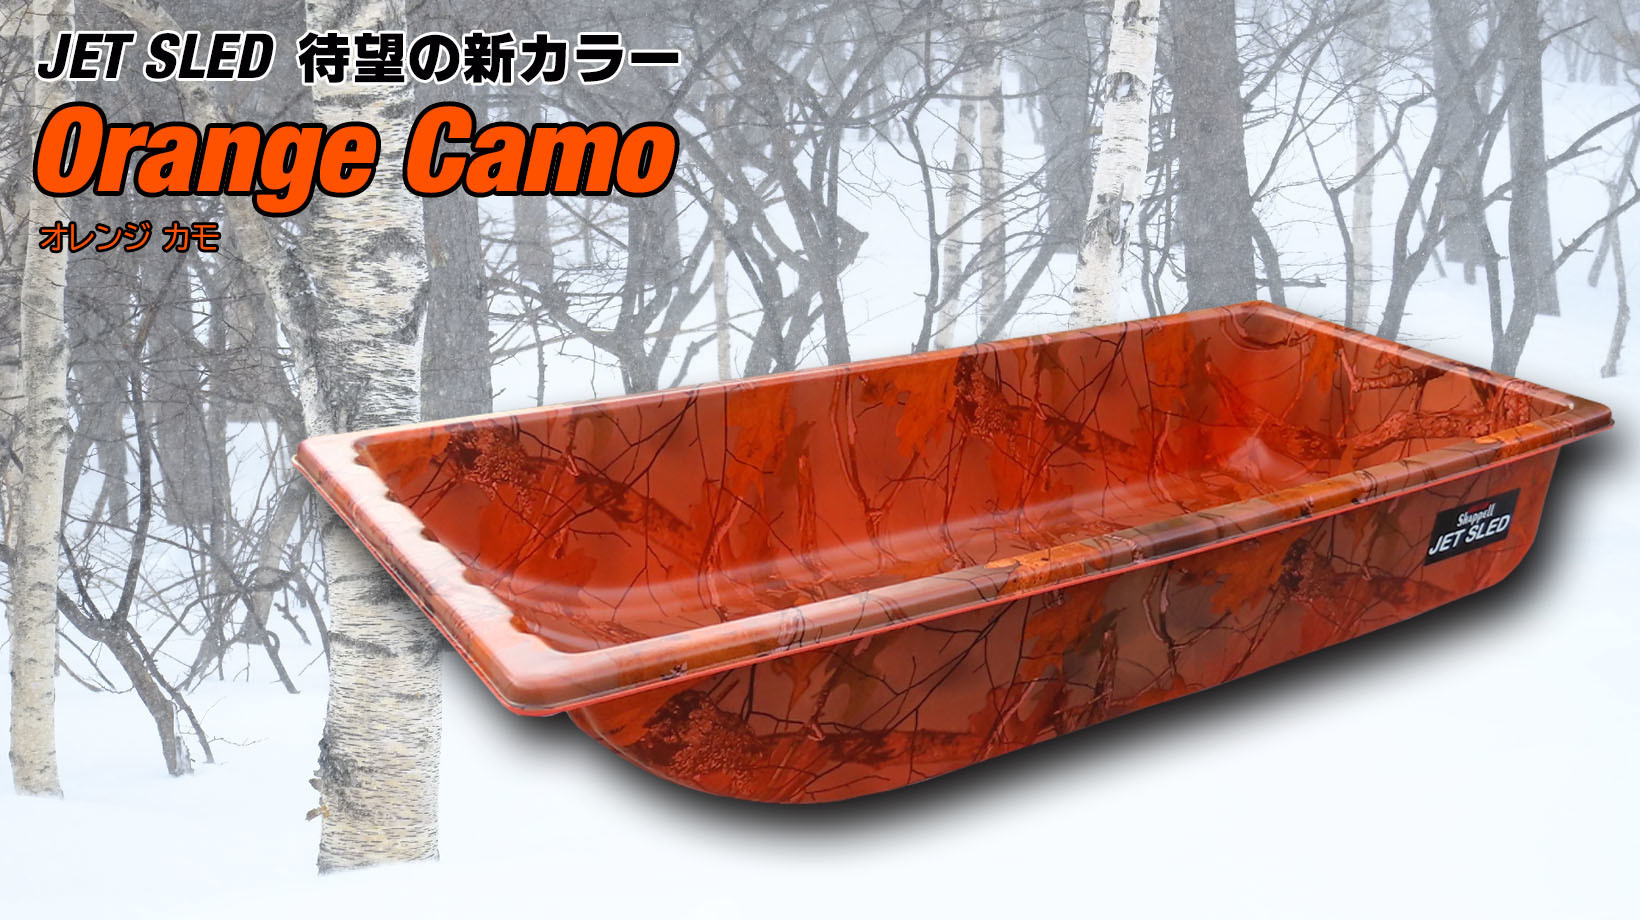 軽くて頑丈な大型ソリ「JET SLED」にNew Color登場！
『Orange Camo』を11月21日より発売